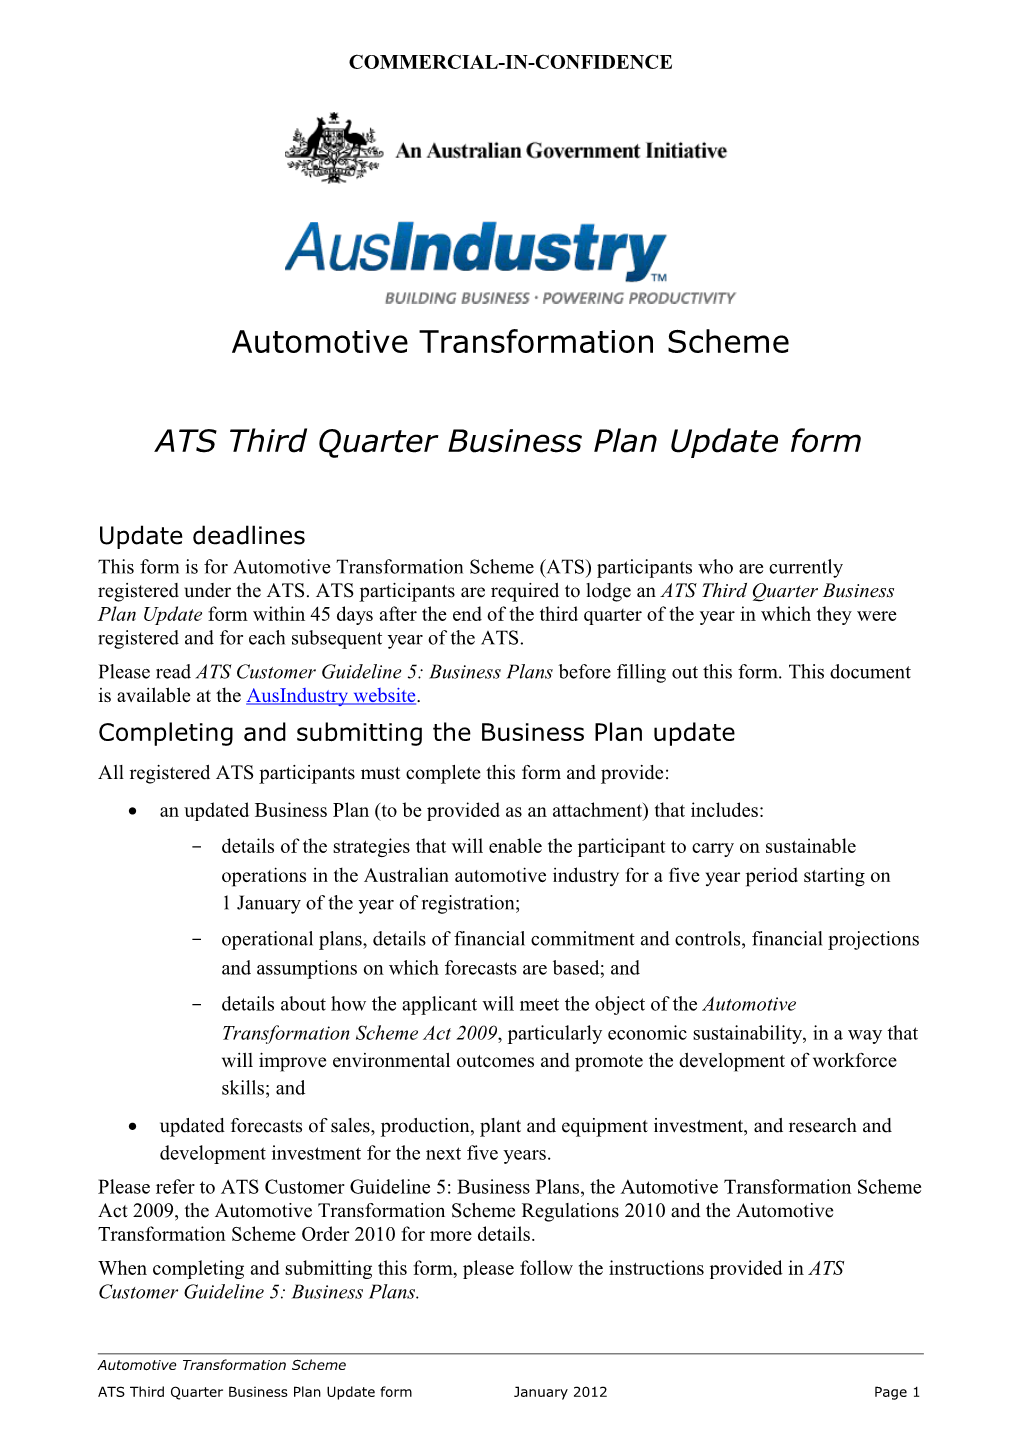 ATS Third Quarter Business Plan Update Form